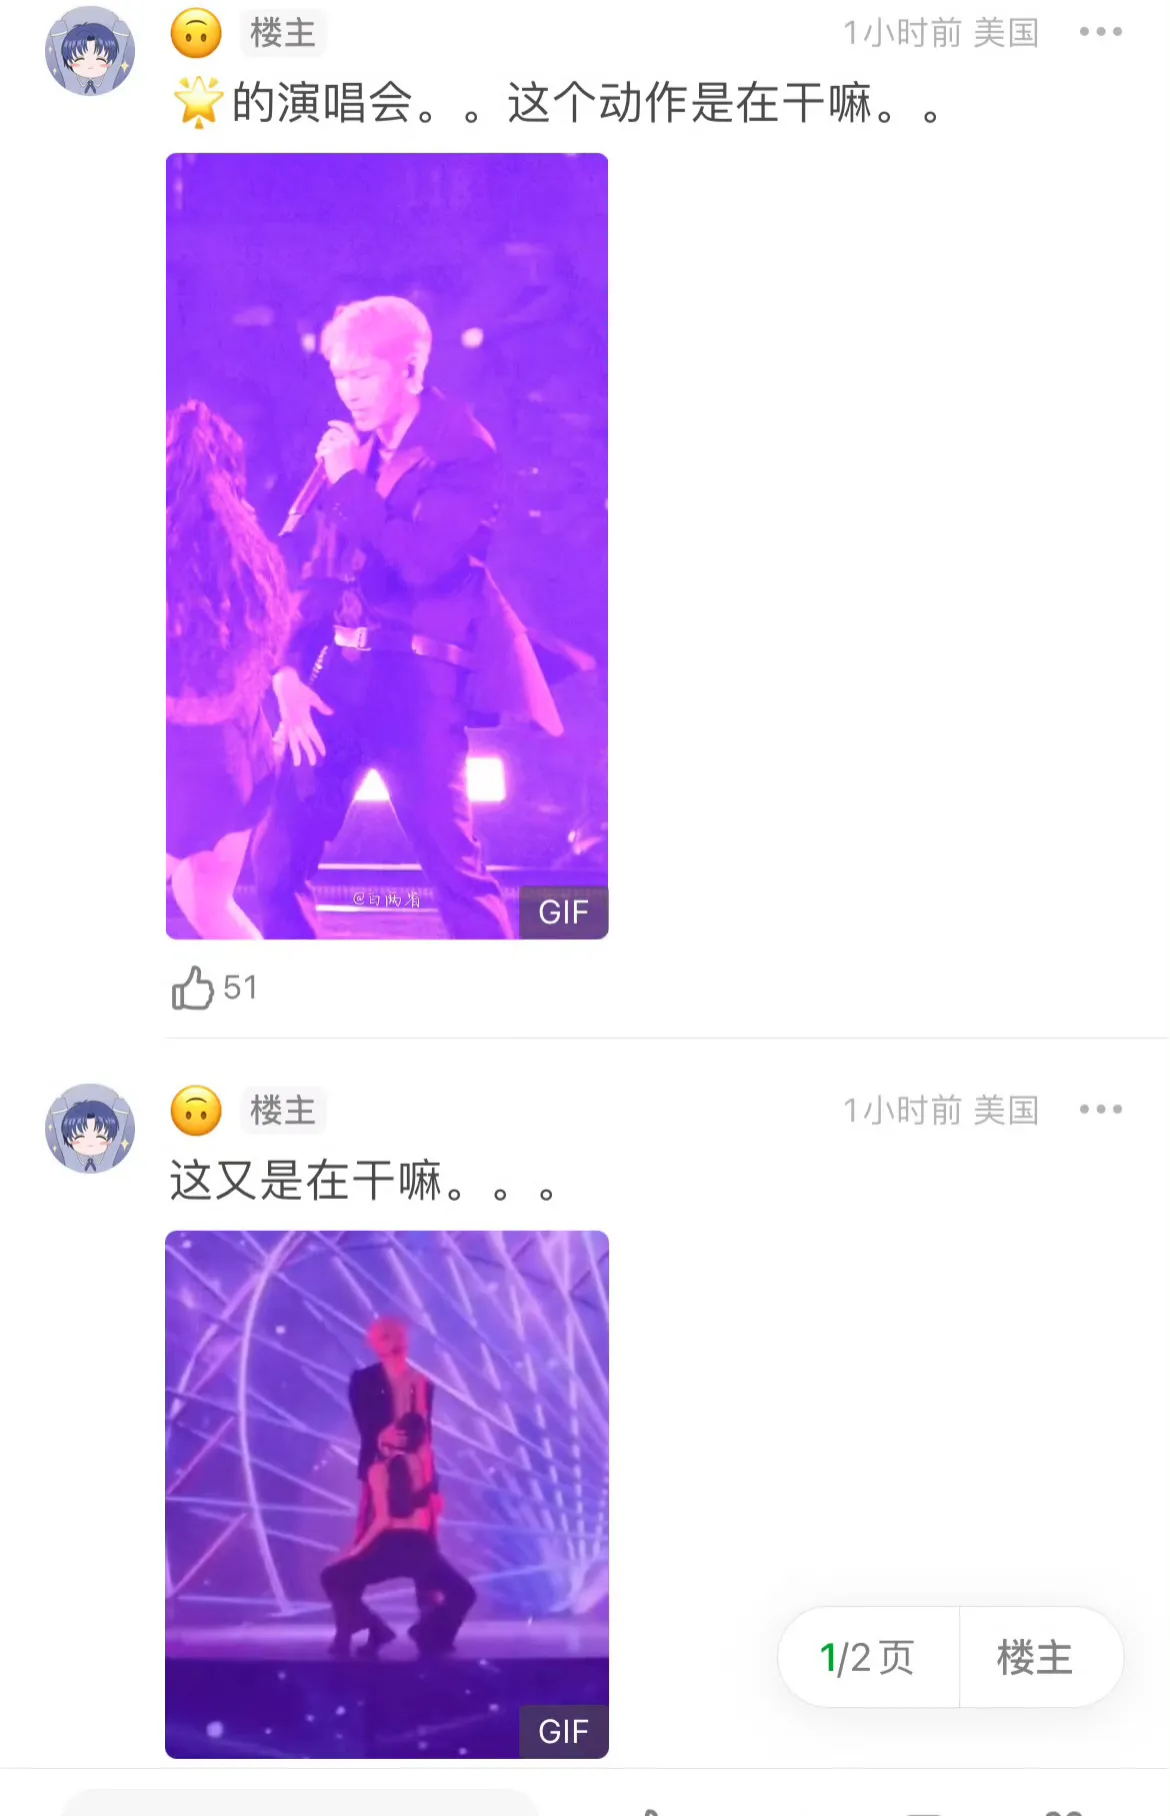 张艺兴演唱会舞蹈动作引争议 过于亲密画面动作引发部分网友反感